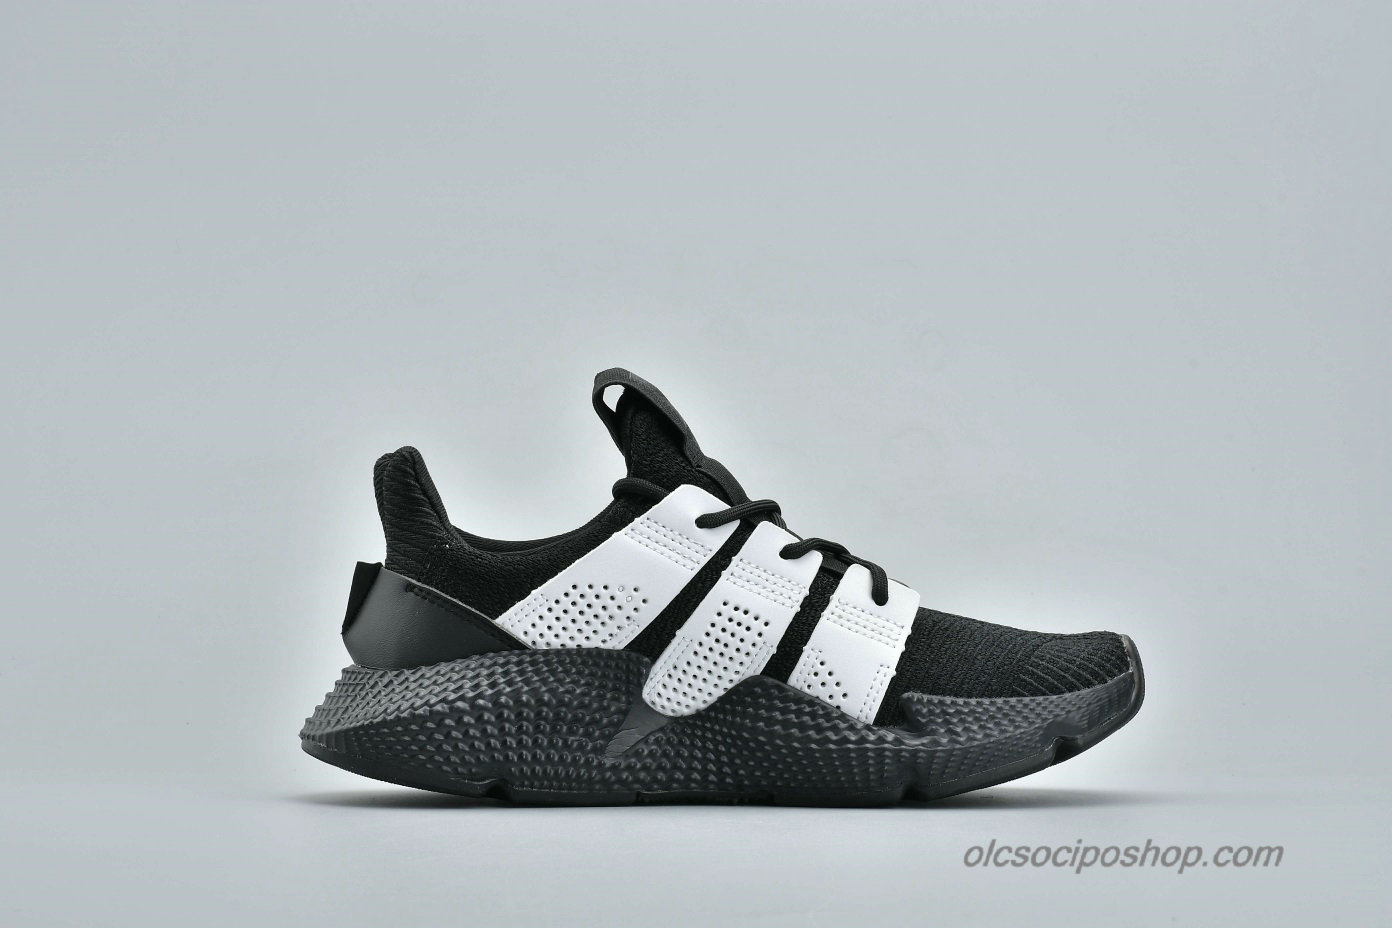 Adidas Prophere Undftd Fekete/Fehér Cipők (B37462) - Kattintásra bezárul